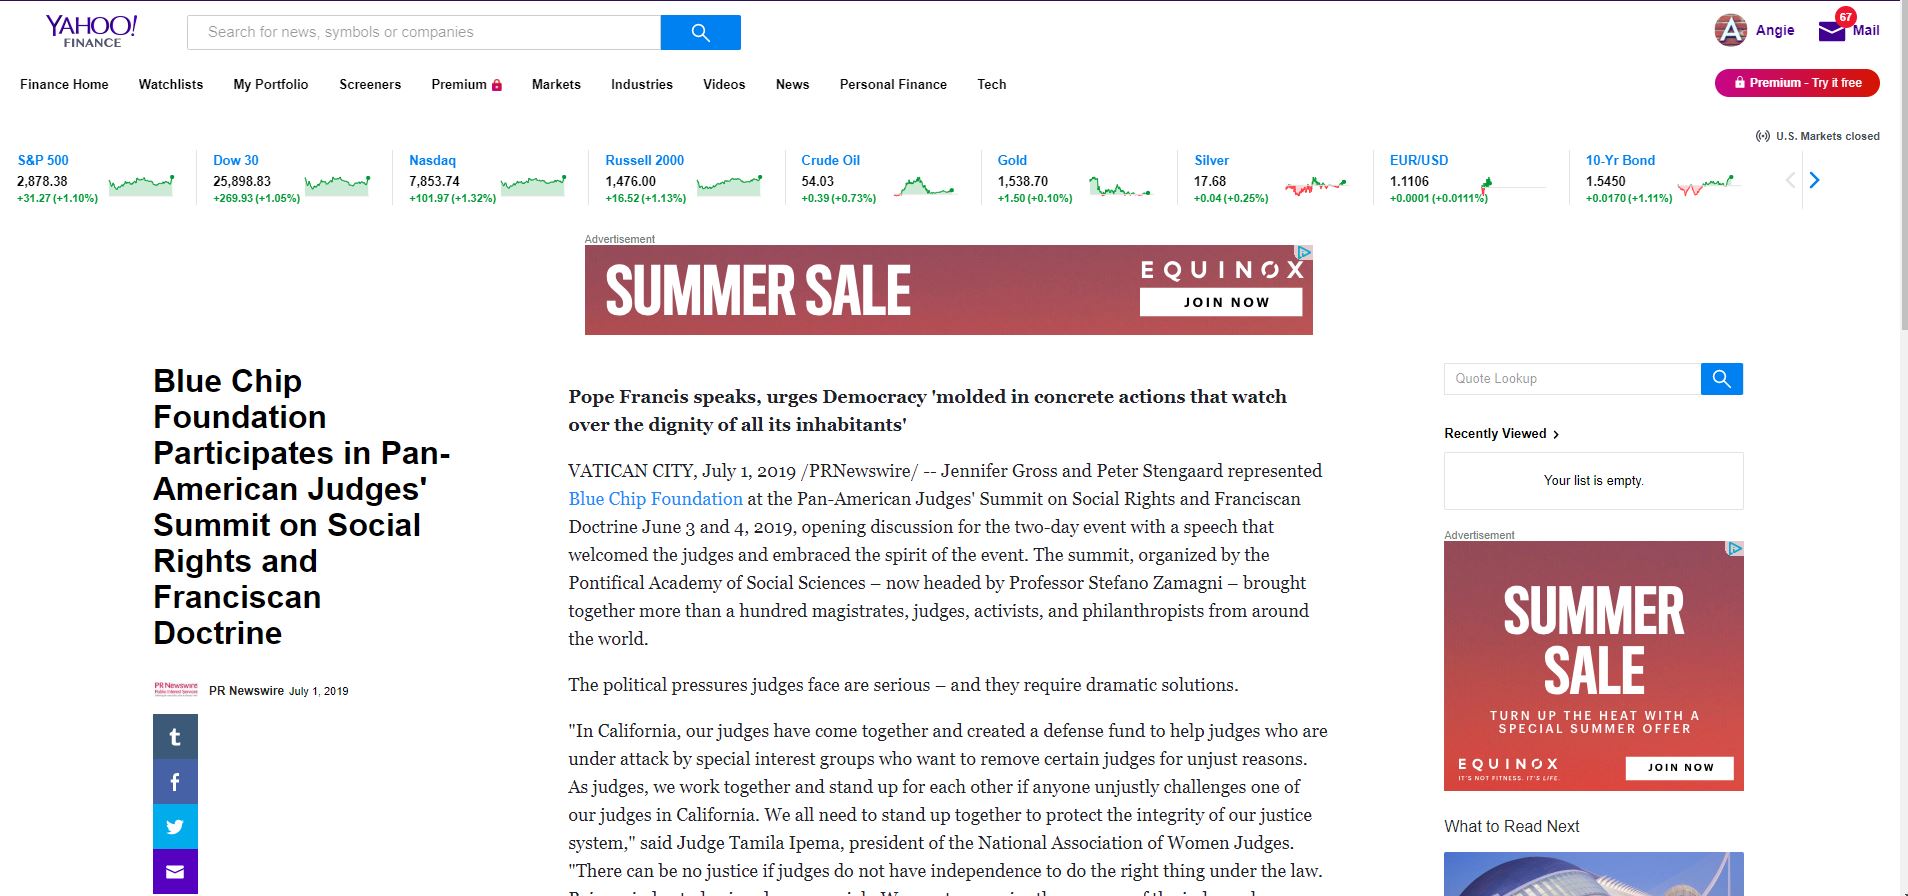 Press Release on Yahoo Finance